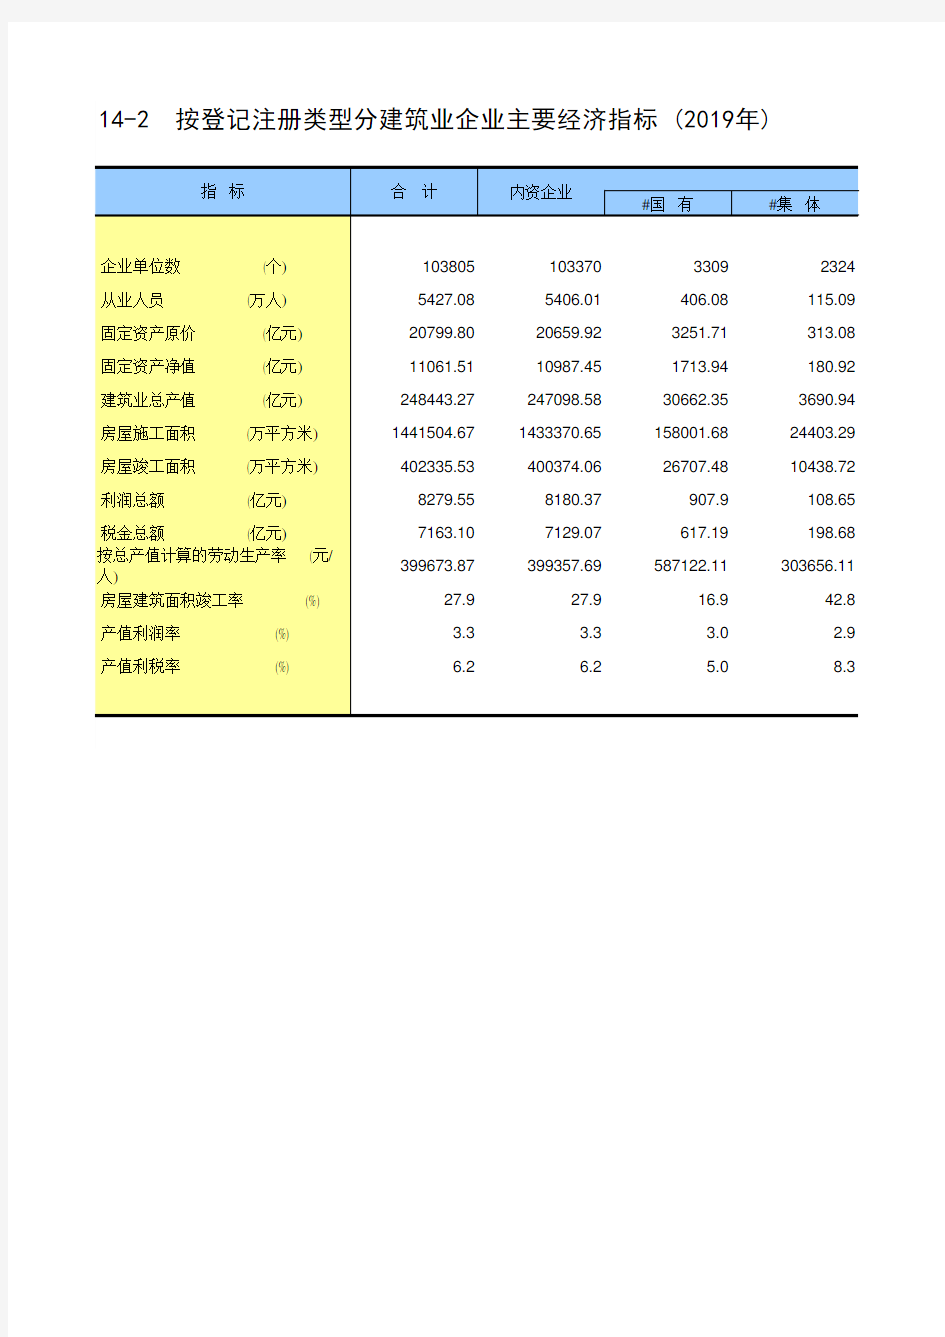 中国统计年鉴2020全国社会经济发展指标：按登记注册类型分建筑业企业主要经济指标2019